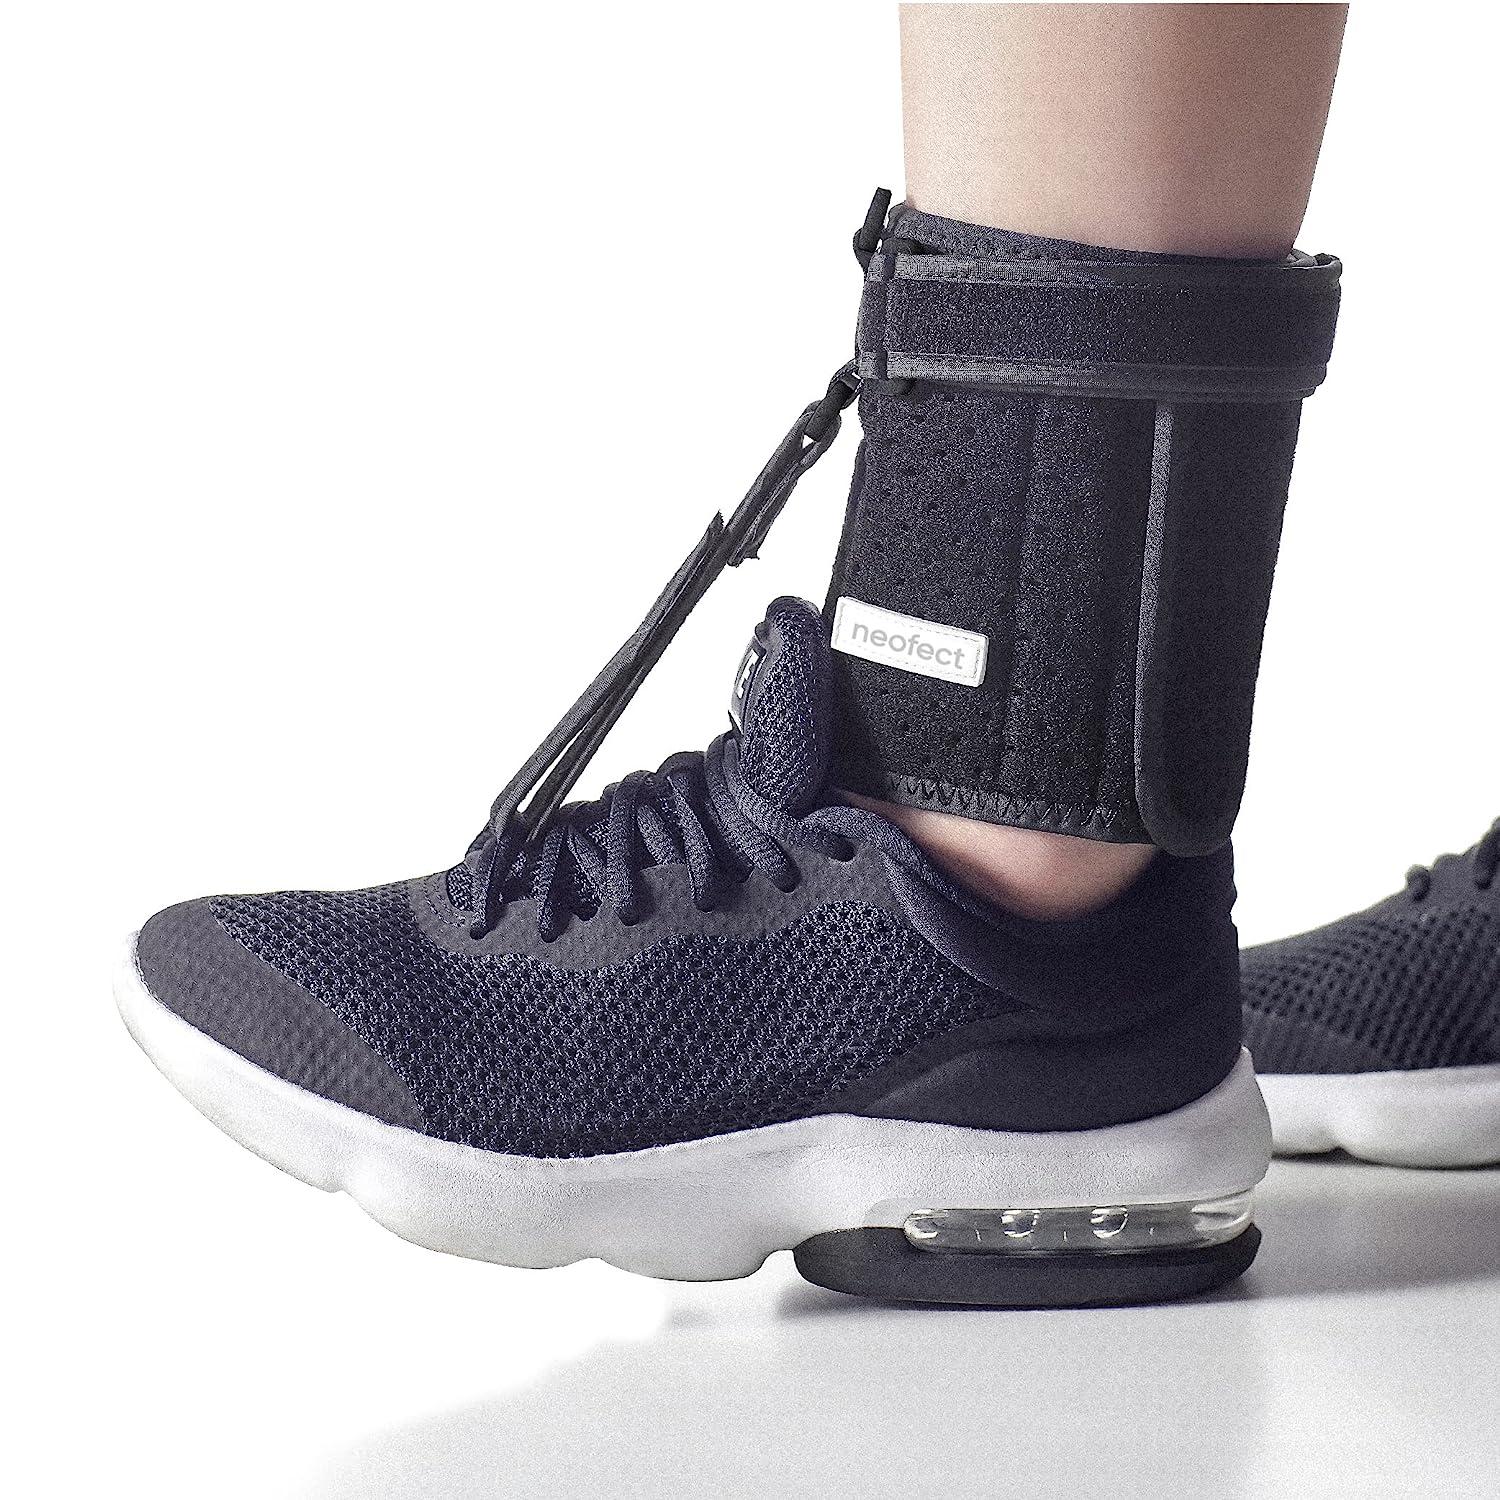 NEOFECT Foot Lift AFO Foot Drop Brace for Walking, Ankle Brace